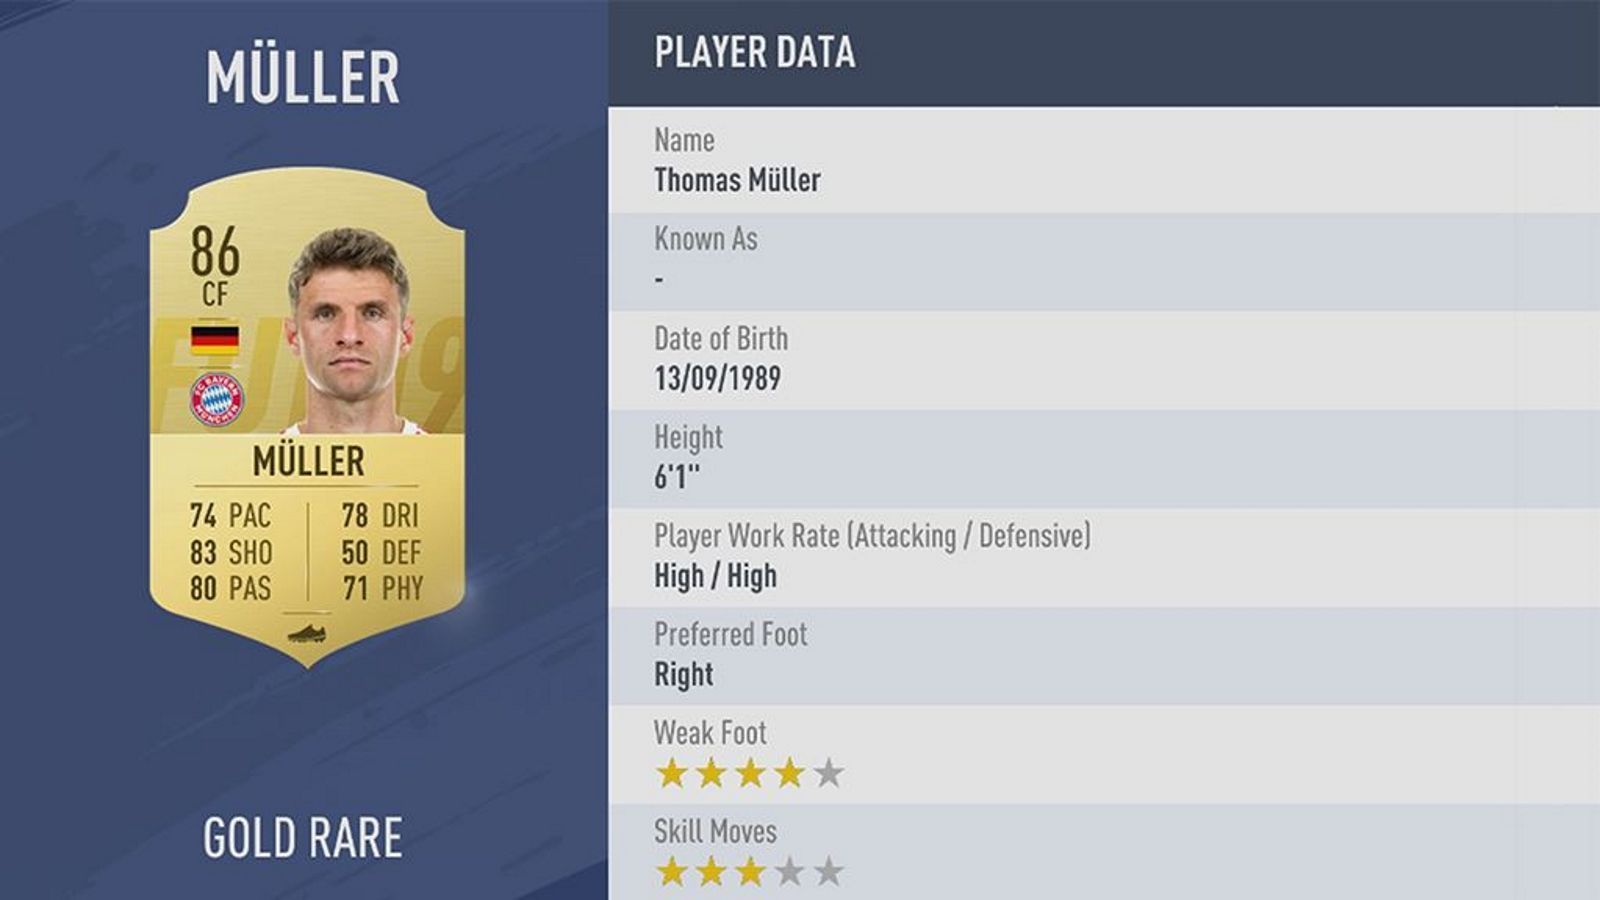 
                <strong>Thomas Müller - Rating: 86</strong><br>
                Ein anderer Bayern-Star konnte sein Rating dagegen halten. Thomas Müller bleibt bei 86, büßt allerdings ein wenig Geschwindigkeit im Vergleich zu seiner FIFA 18-Version ein. Dafür hat er verbesserte Pässe und präzisere Schüsse zu bieten.
              